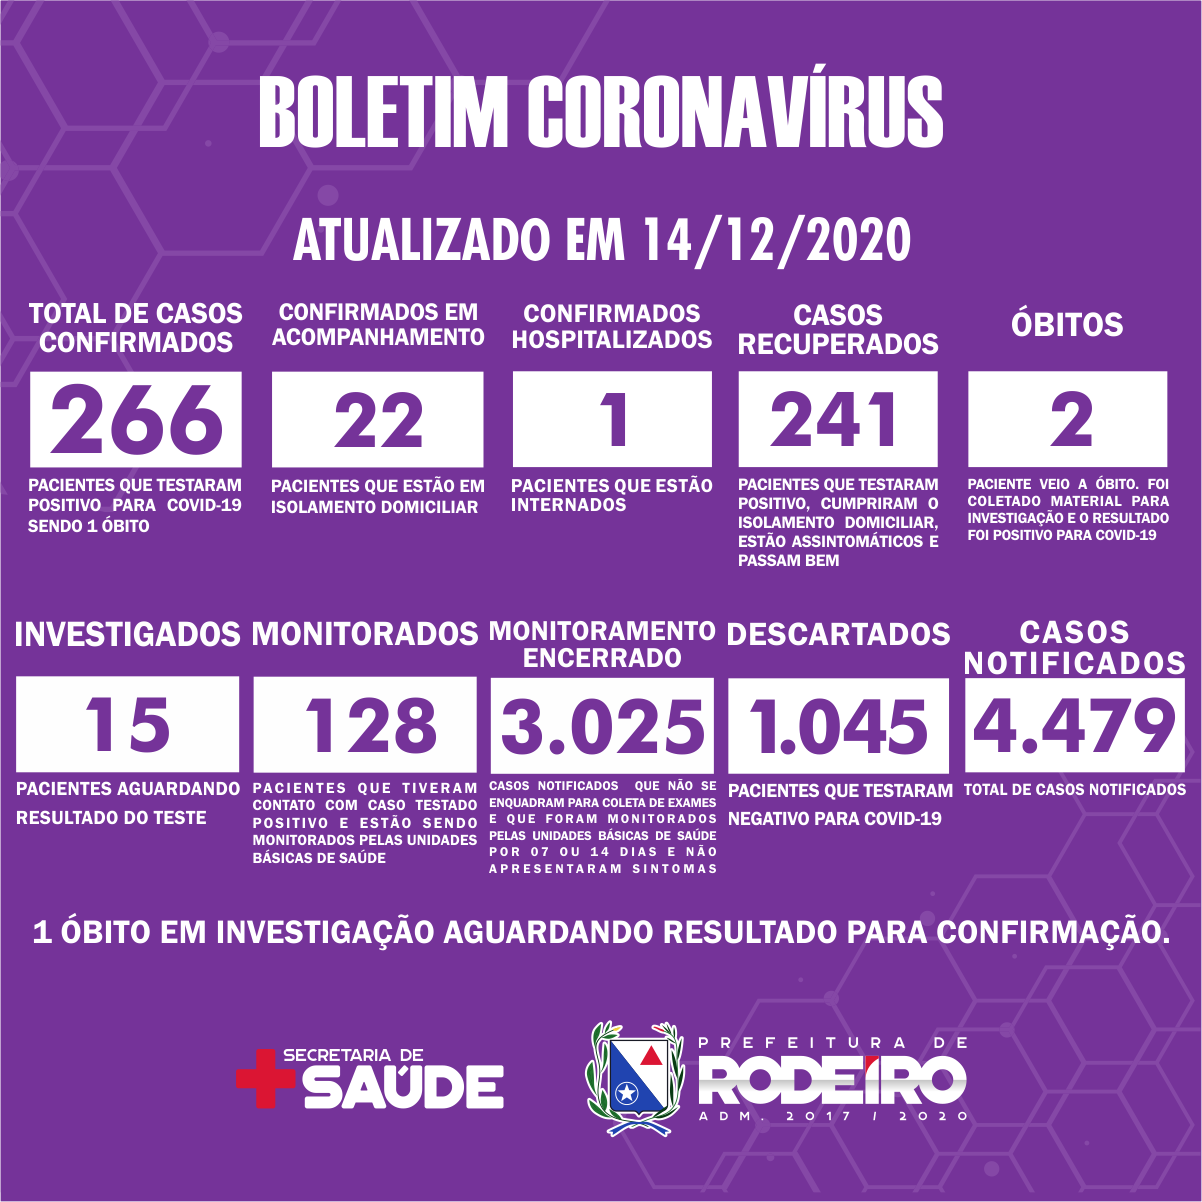 Boletim Epidemiológico do Município de Rodeiro sobre coronavírus, atualizado em 14/12/2020